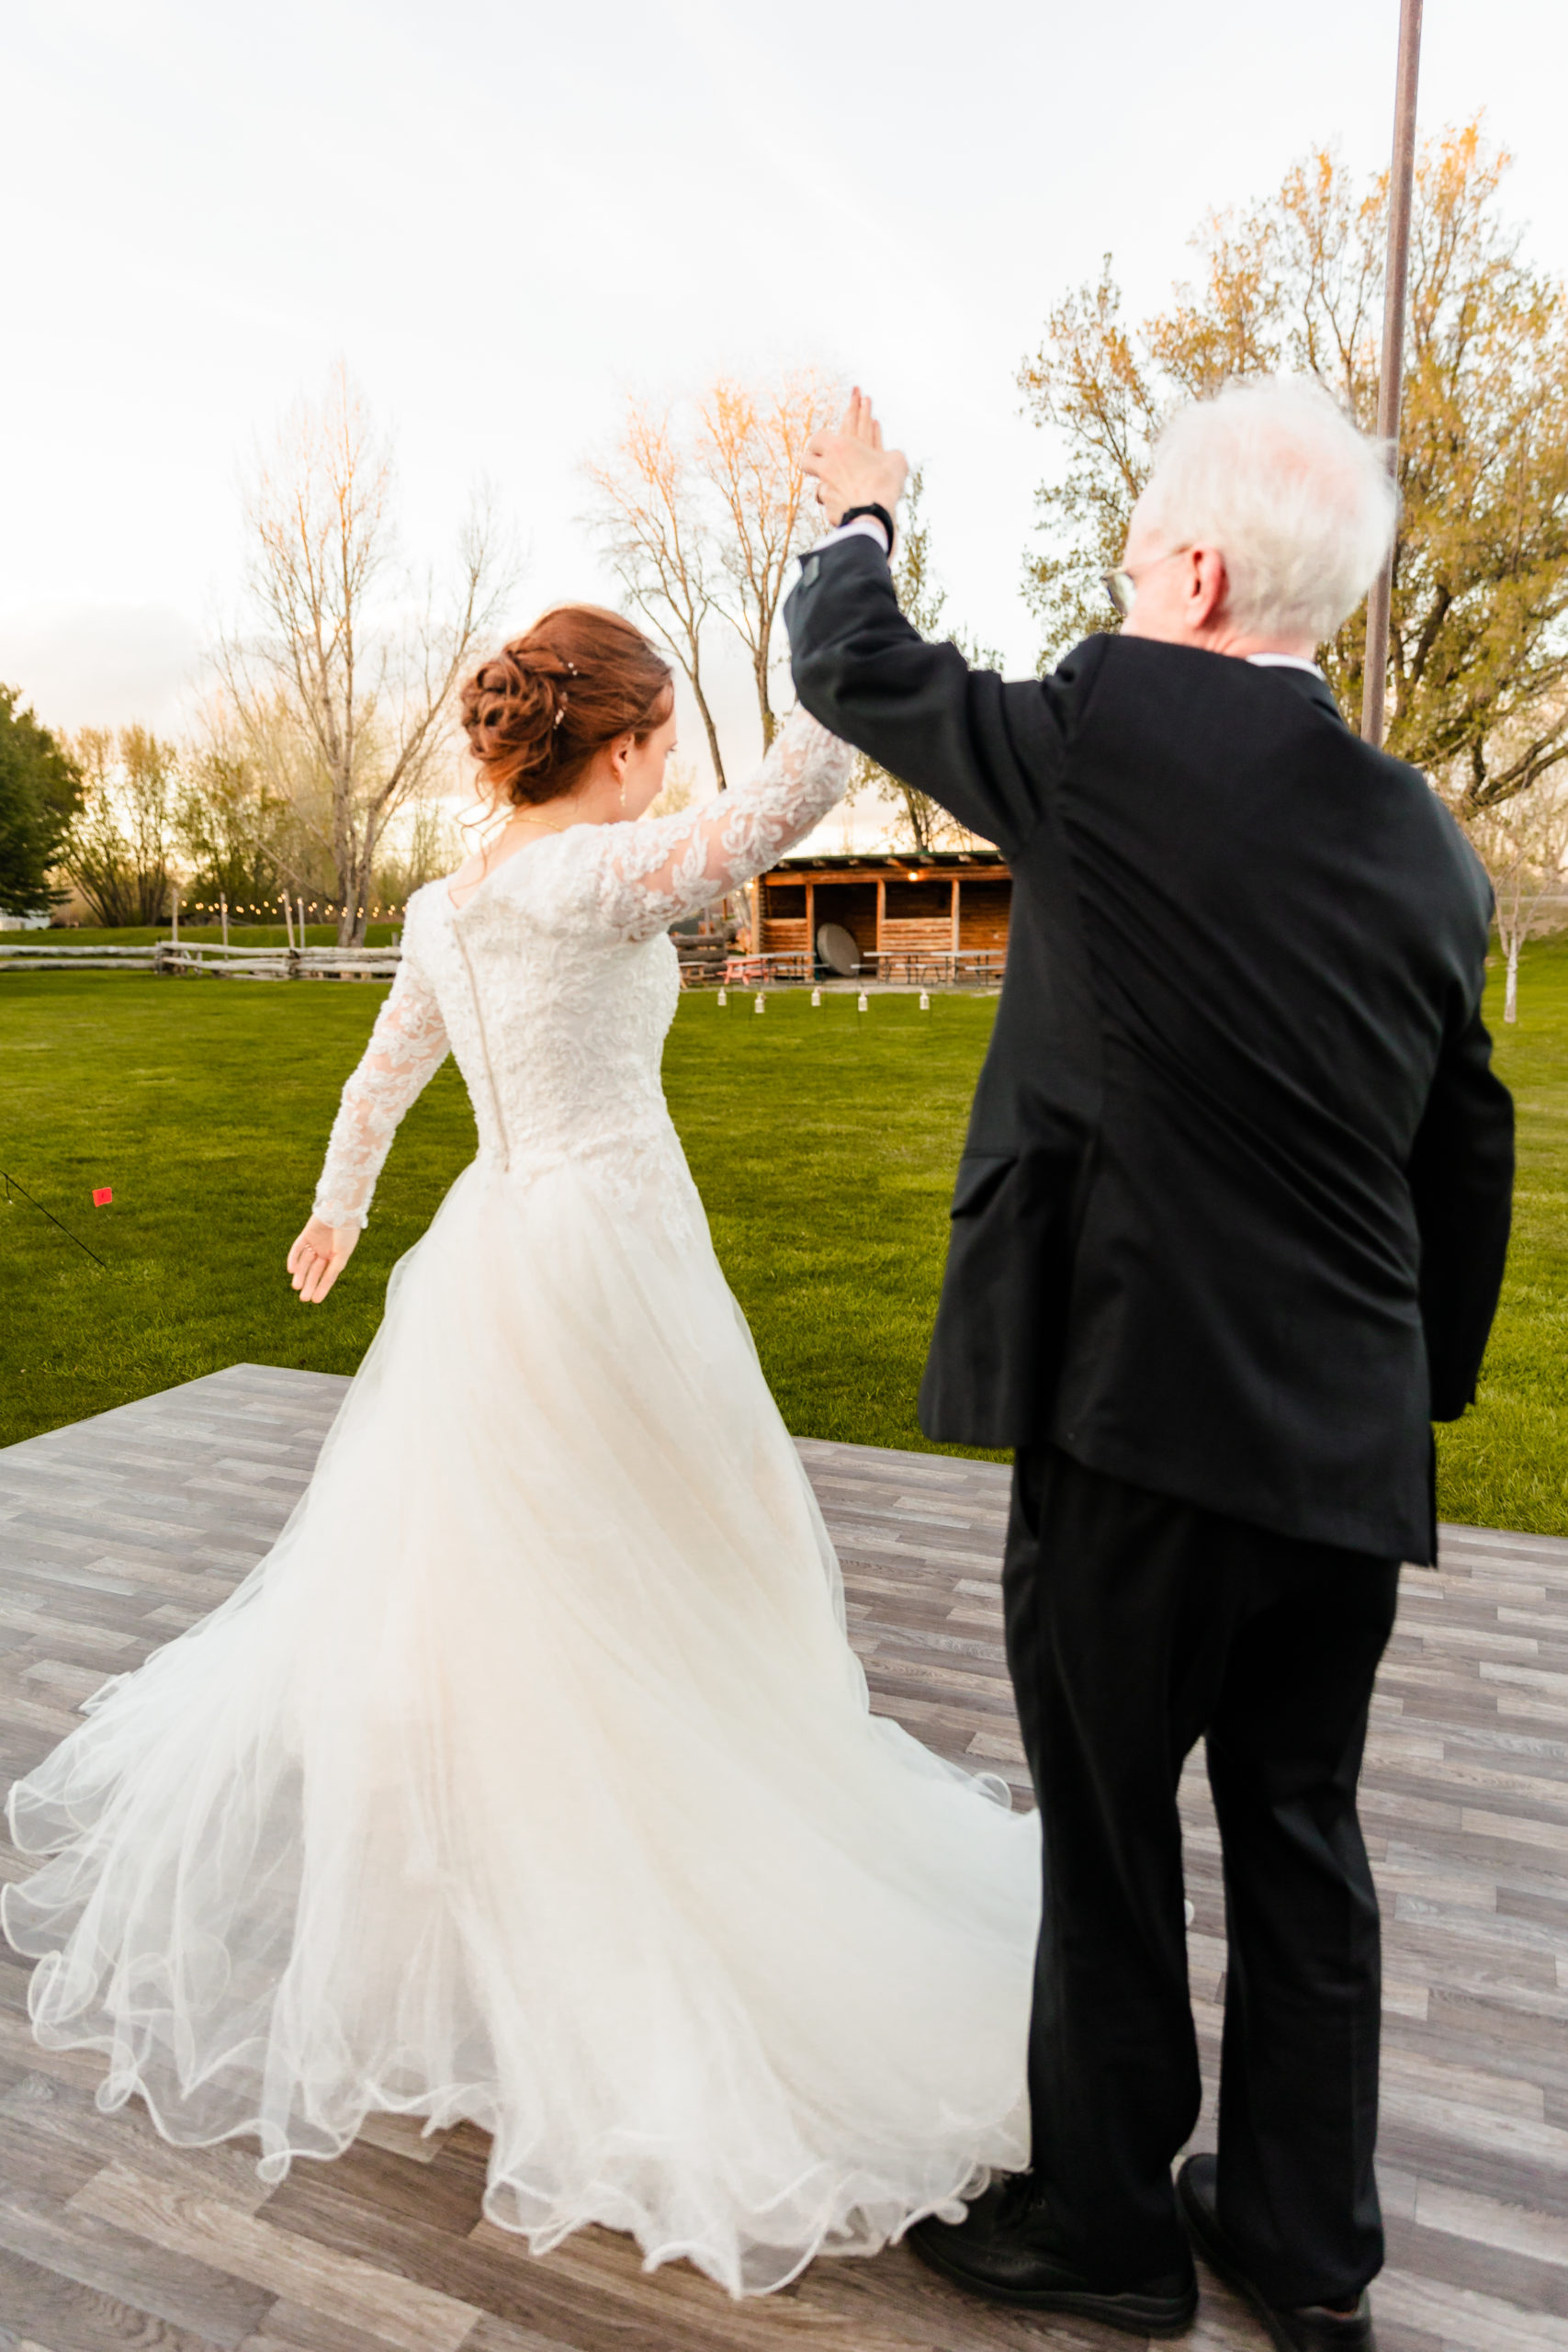 father spinning bride around on dance floor